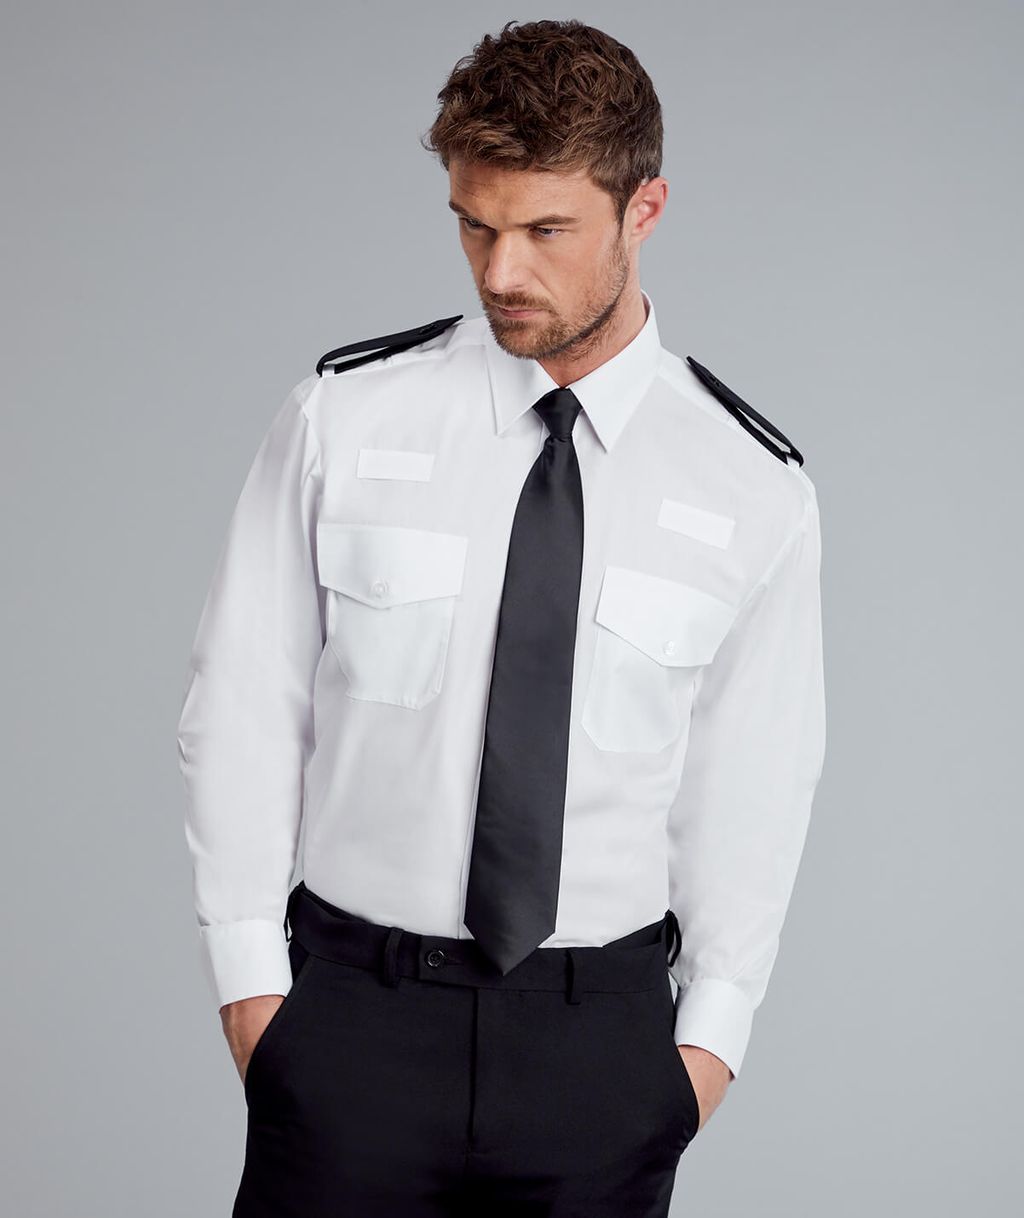 Men's Security Shirts & Pilot Shirts